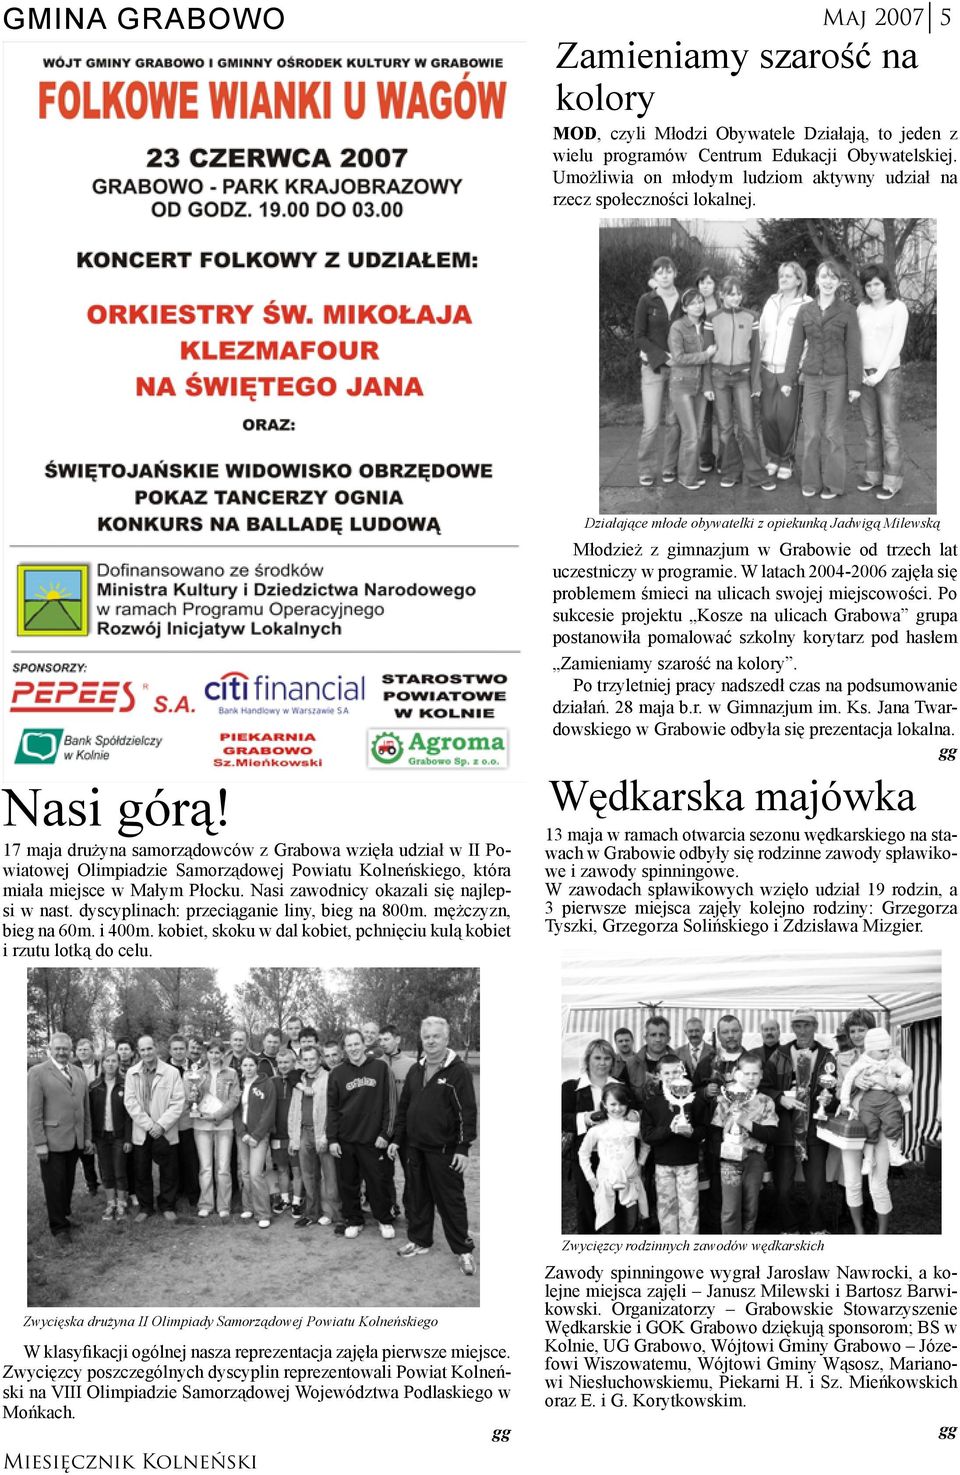 17 maja drużyna samorządowców z Grabowa wzięła udział w II Powiatowej Olimpiadzie Samorządowej Powiatu Kolneńskiego, która miała miejsce w Małym Płocku. Nasi zawodnicy okazali się najlepsi w nast.